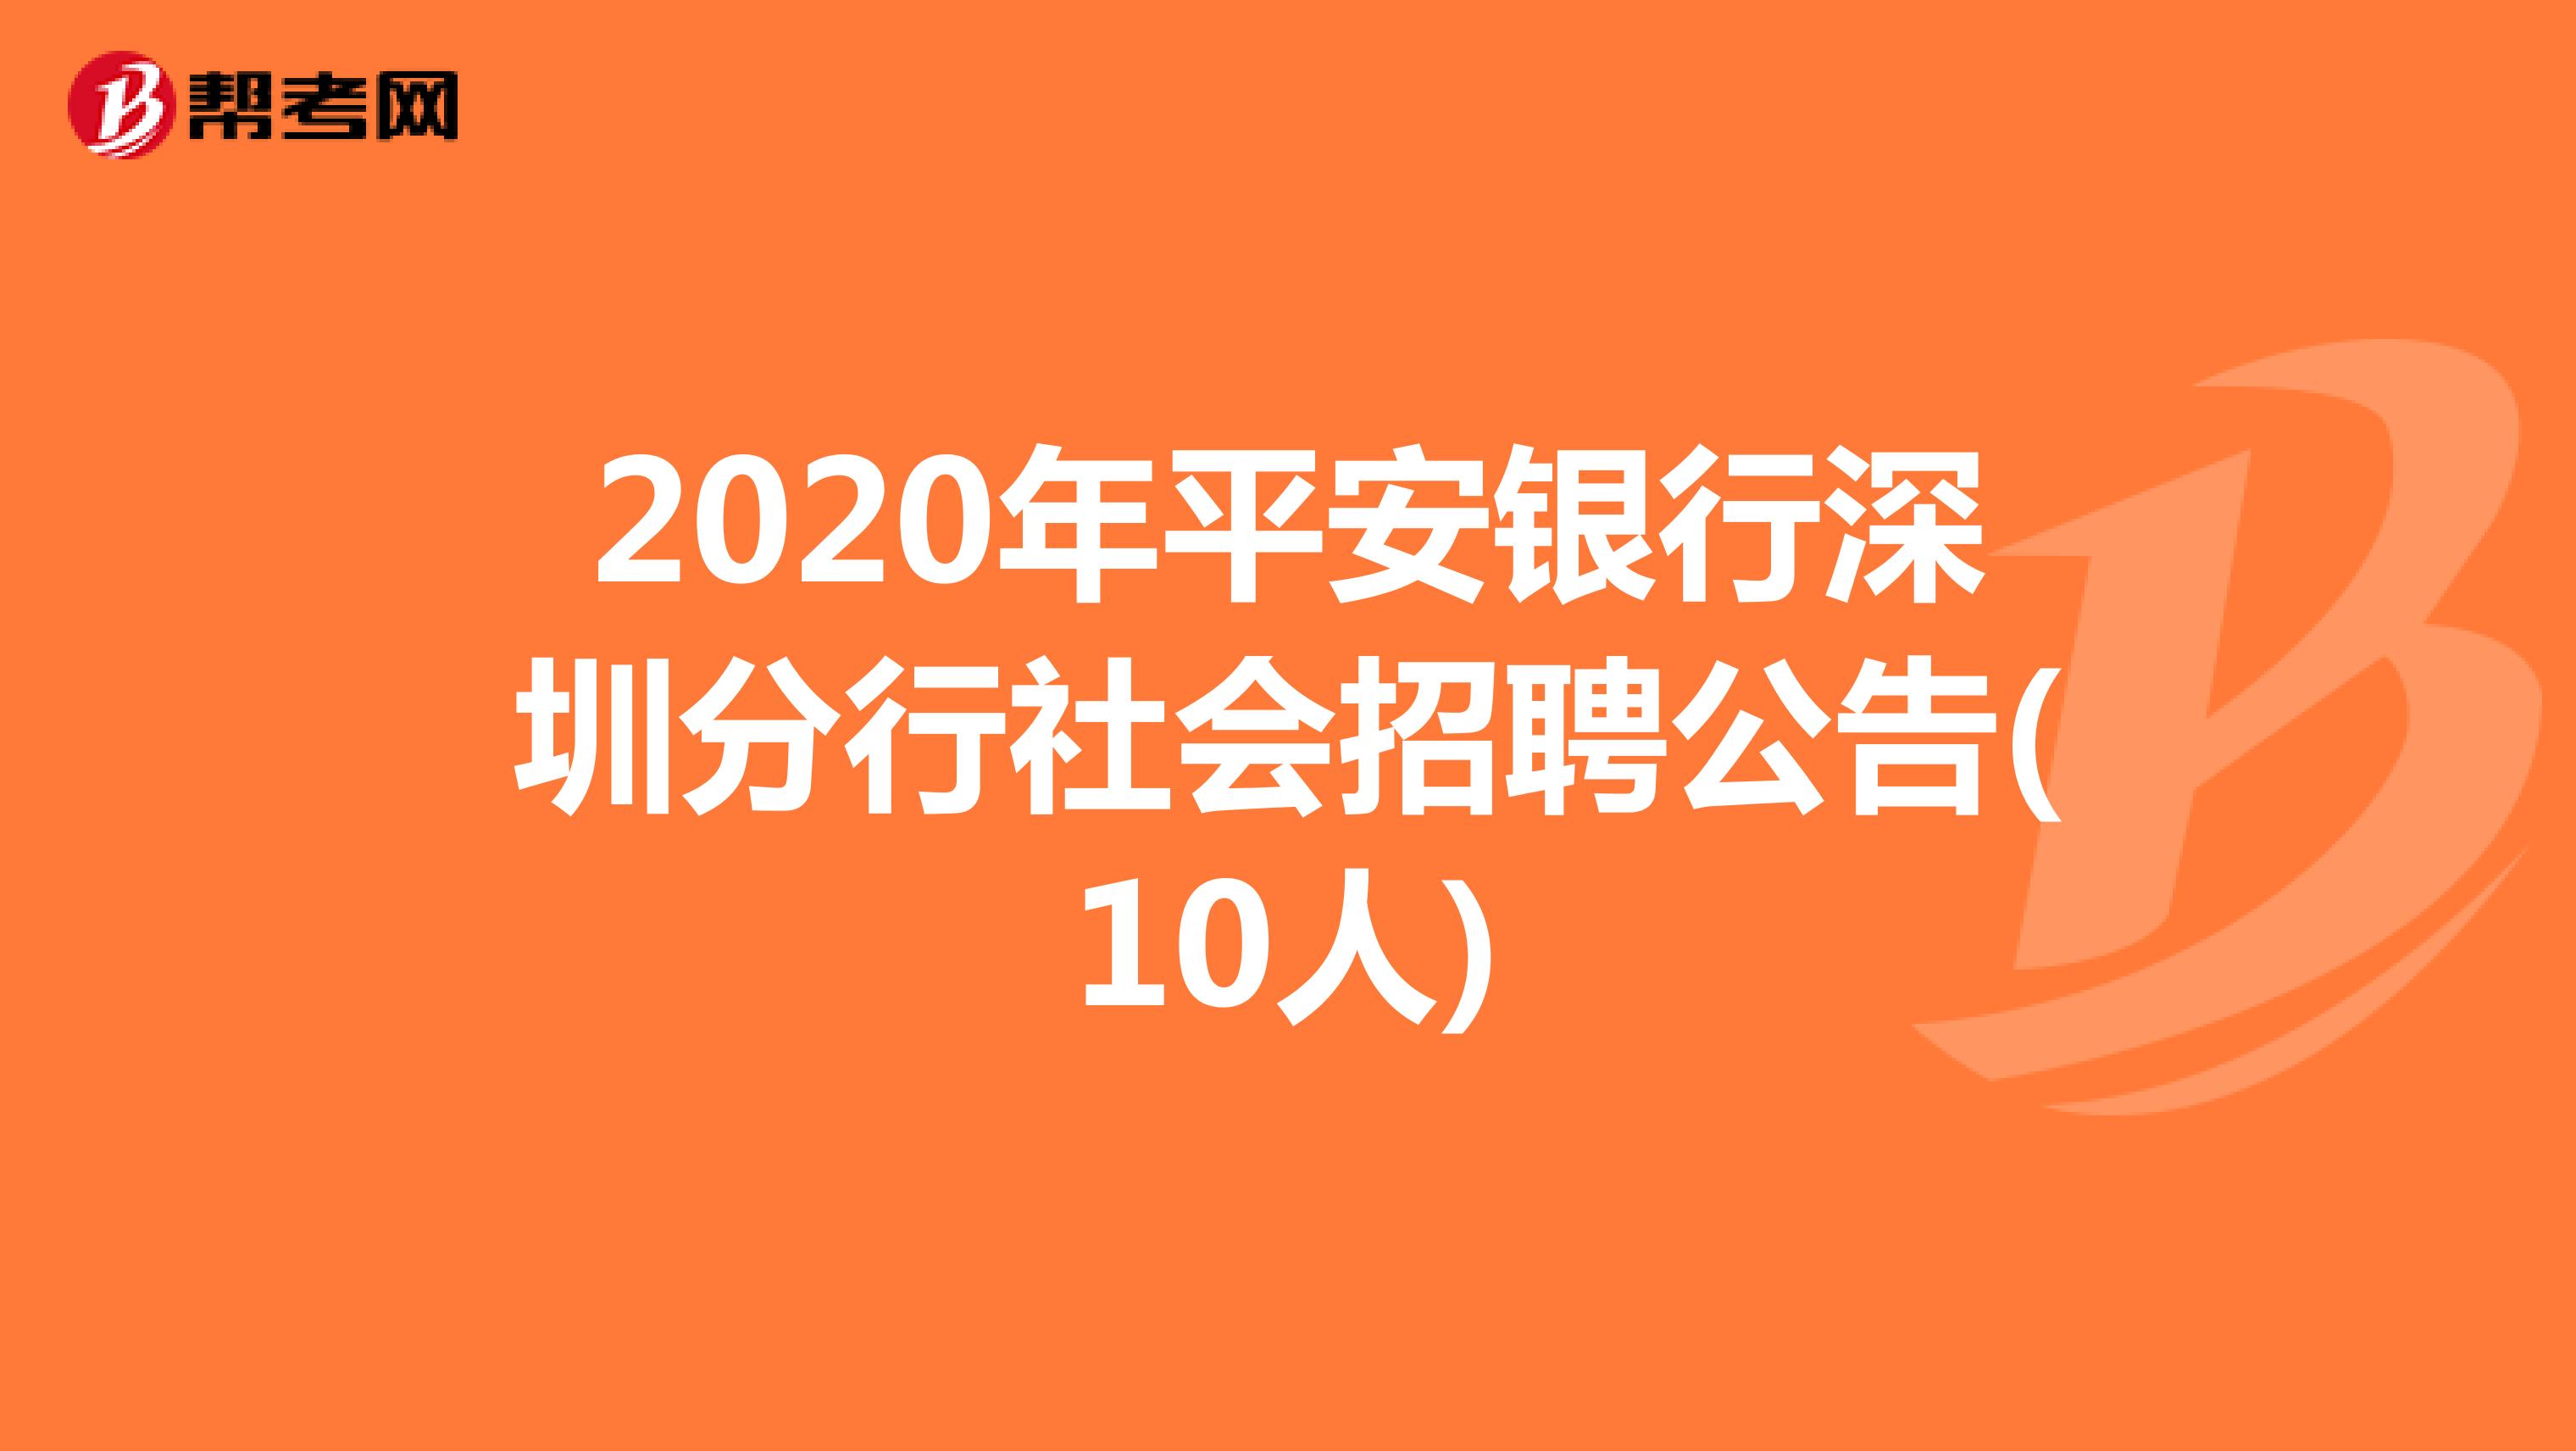 2020年平安银行深圳分行社会招聘公告(10人)